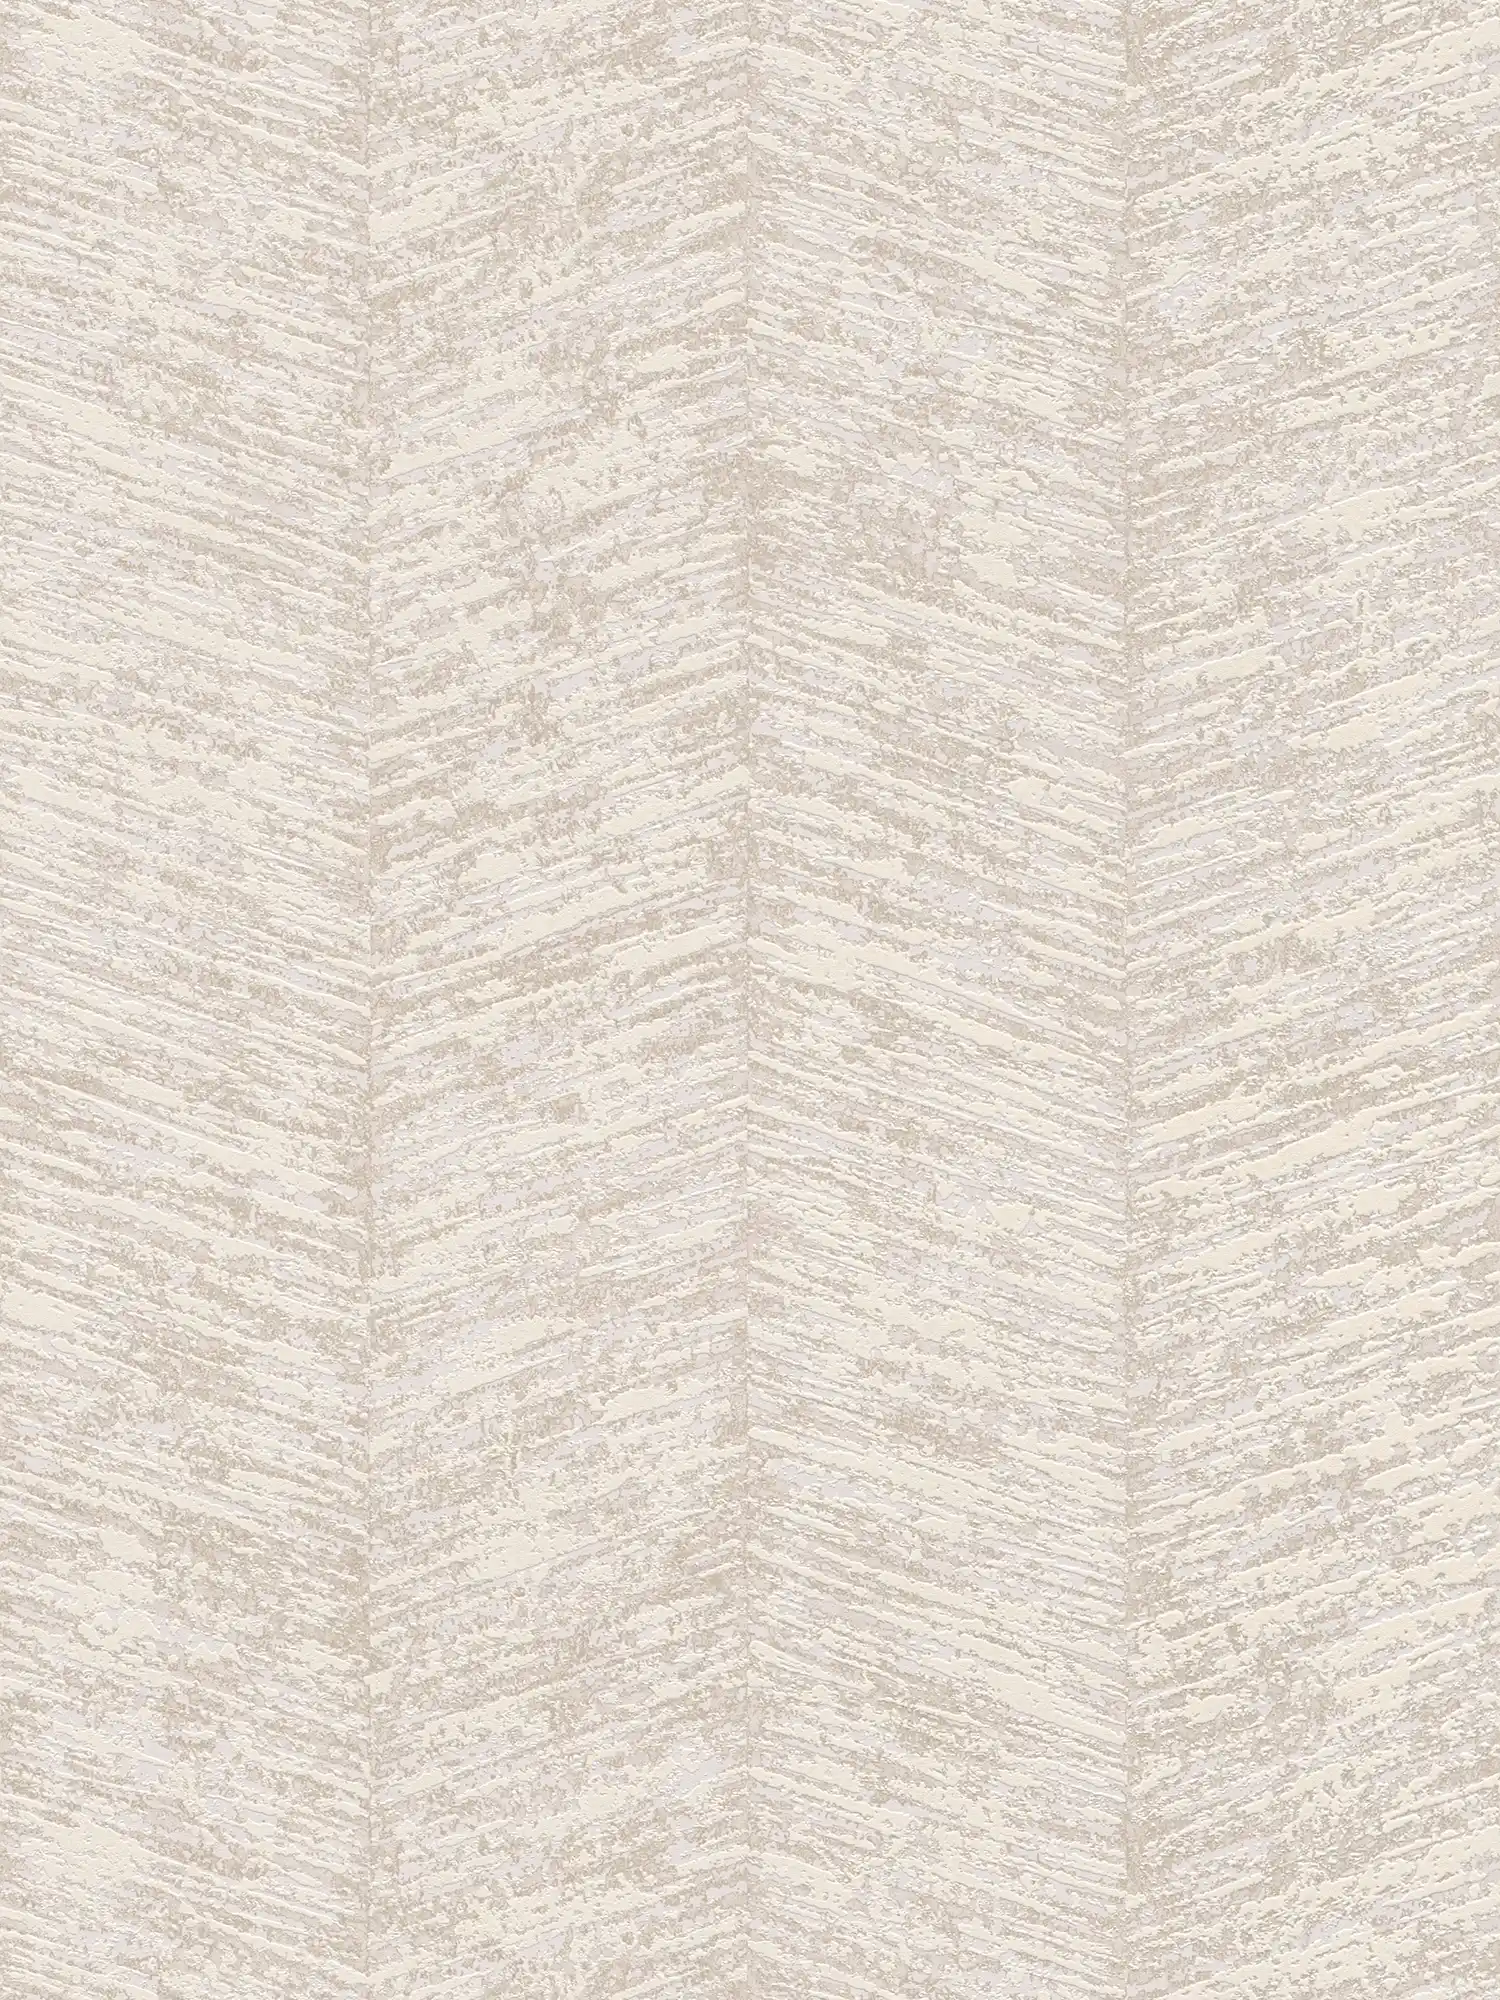 structuurbehang ethno design met streepeffect - crème, metallic, beige
